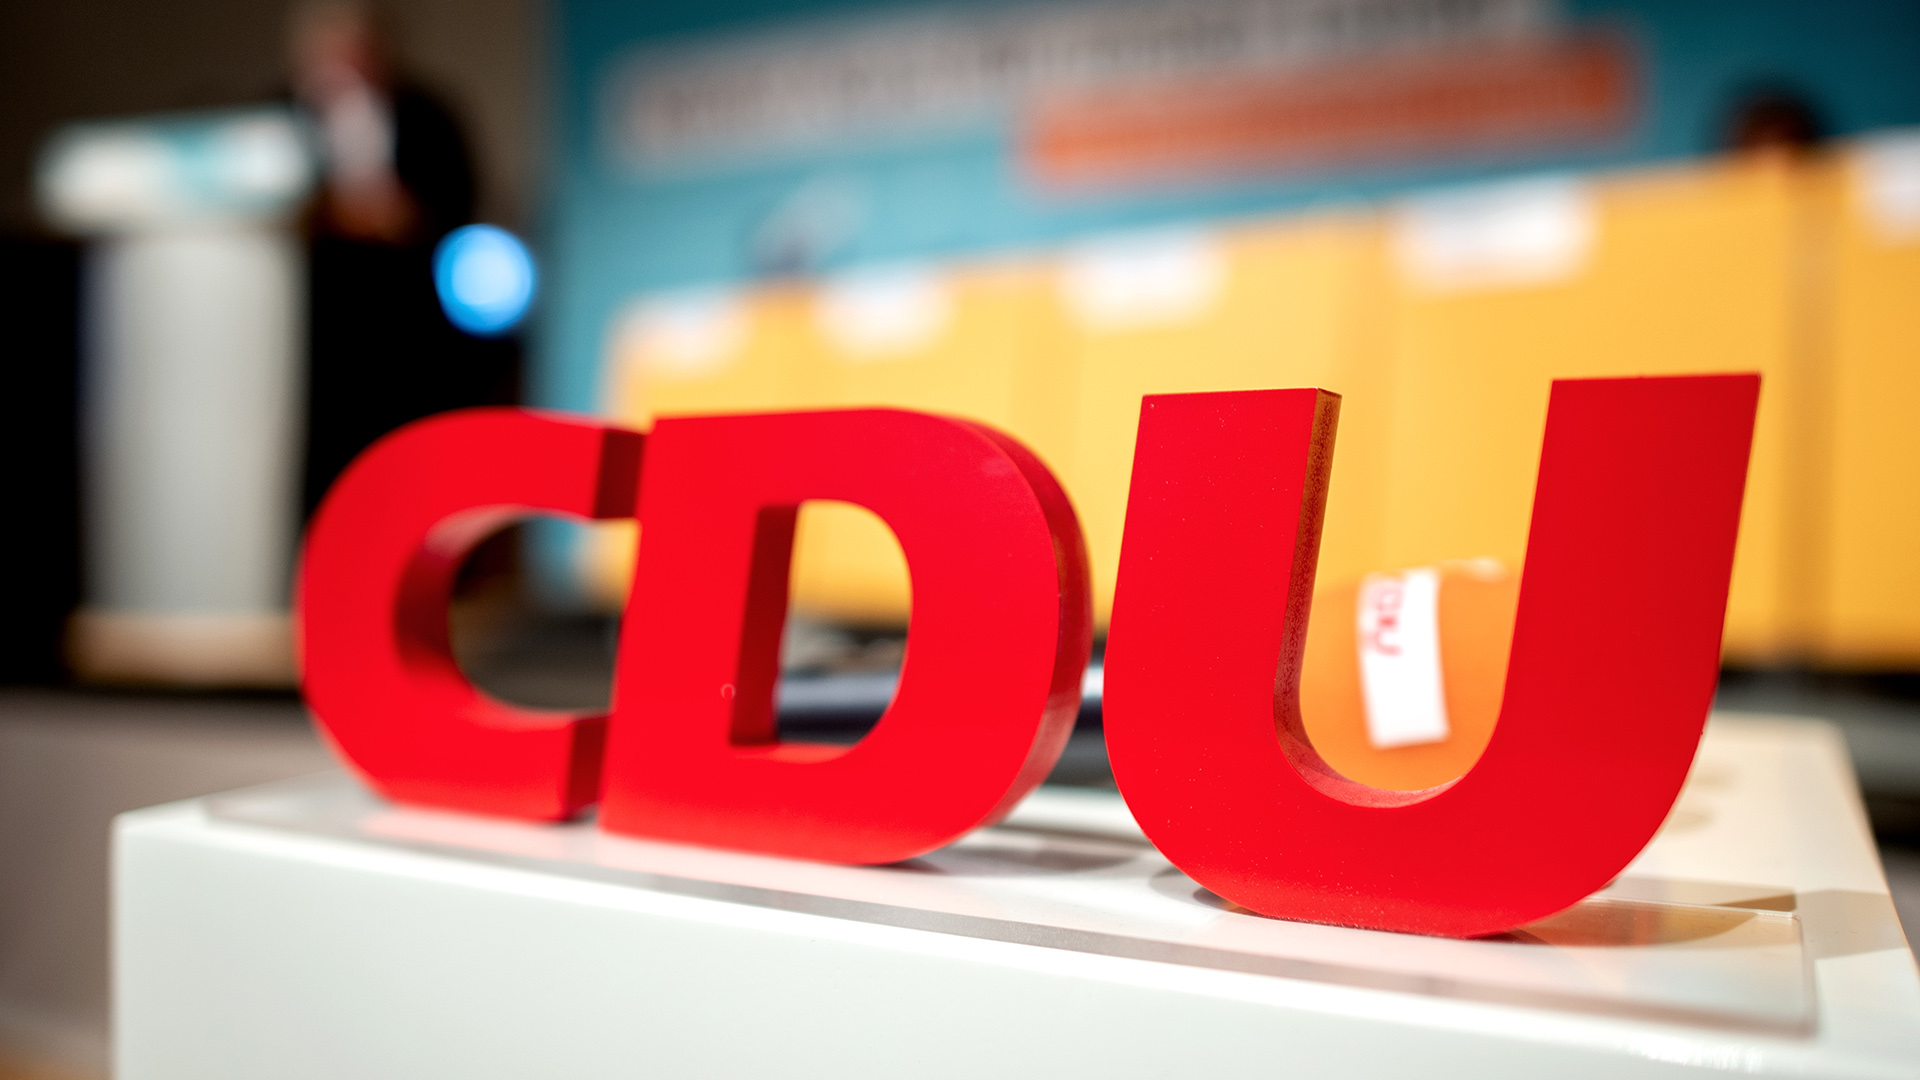  CDU Parteitag Wie Rechtssicher Ist Die Online Wahl Tagesschau de